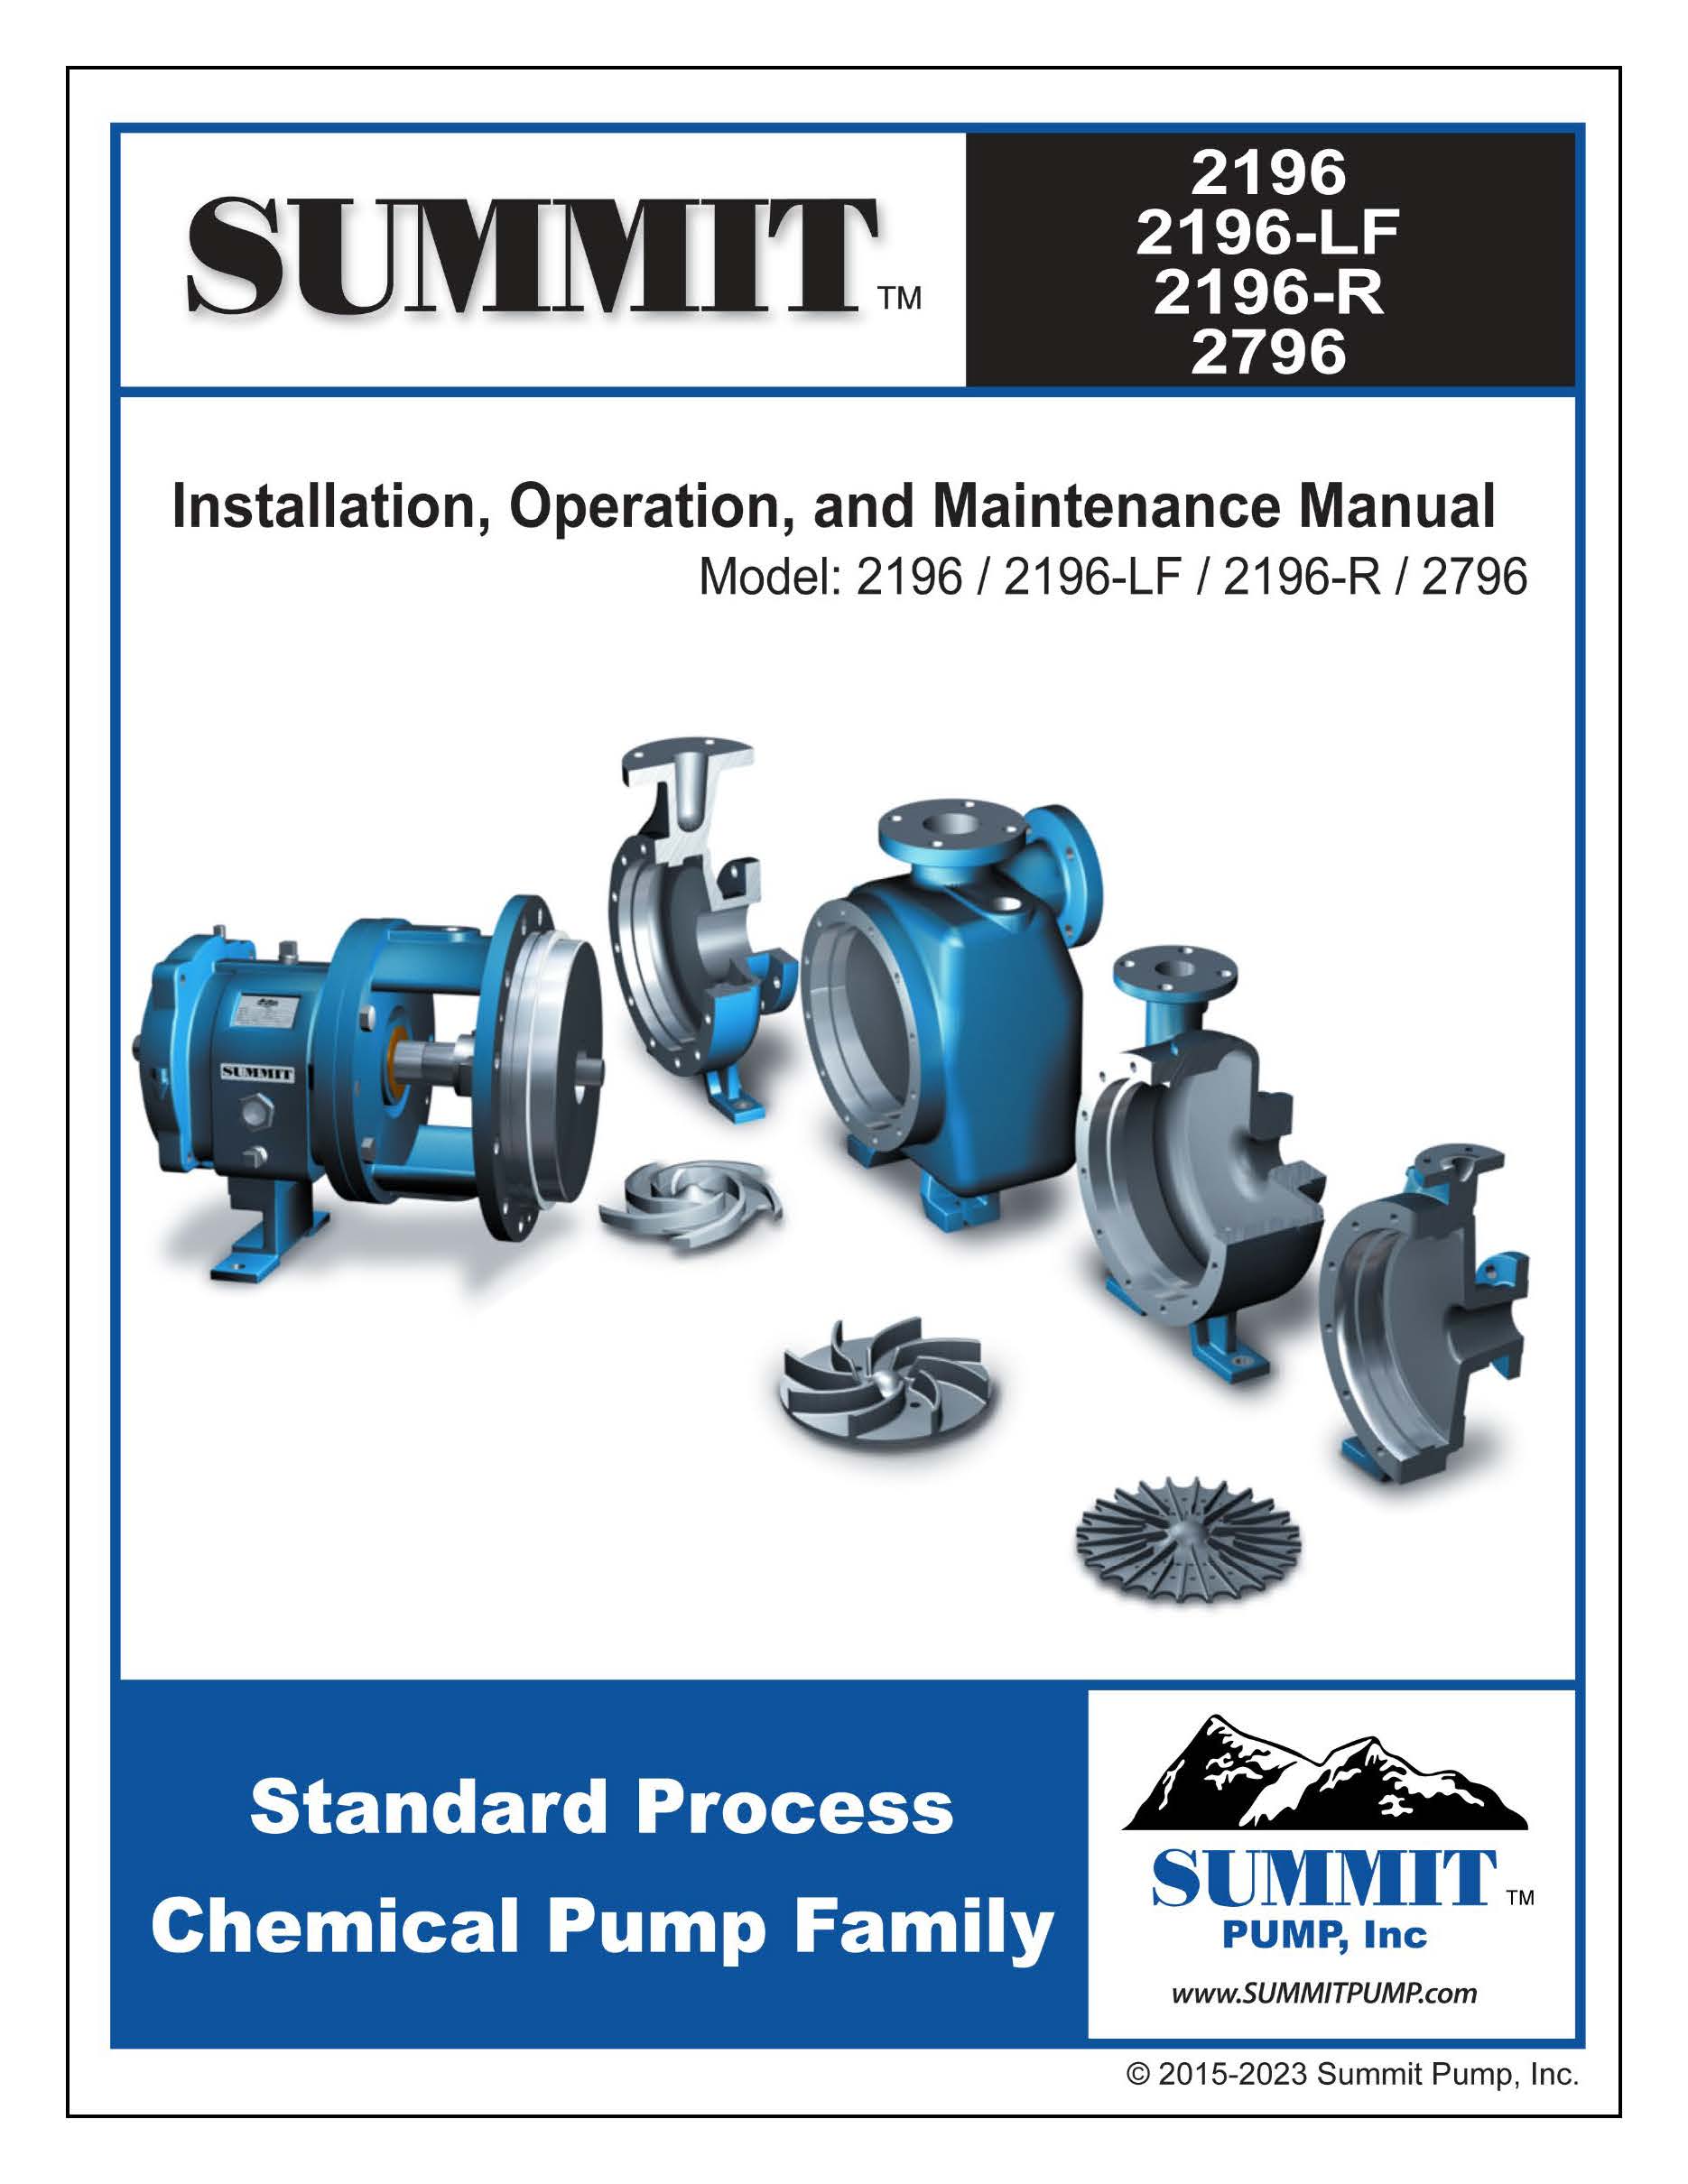 Summit 2196 ANSI Pump Manual - English